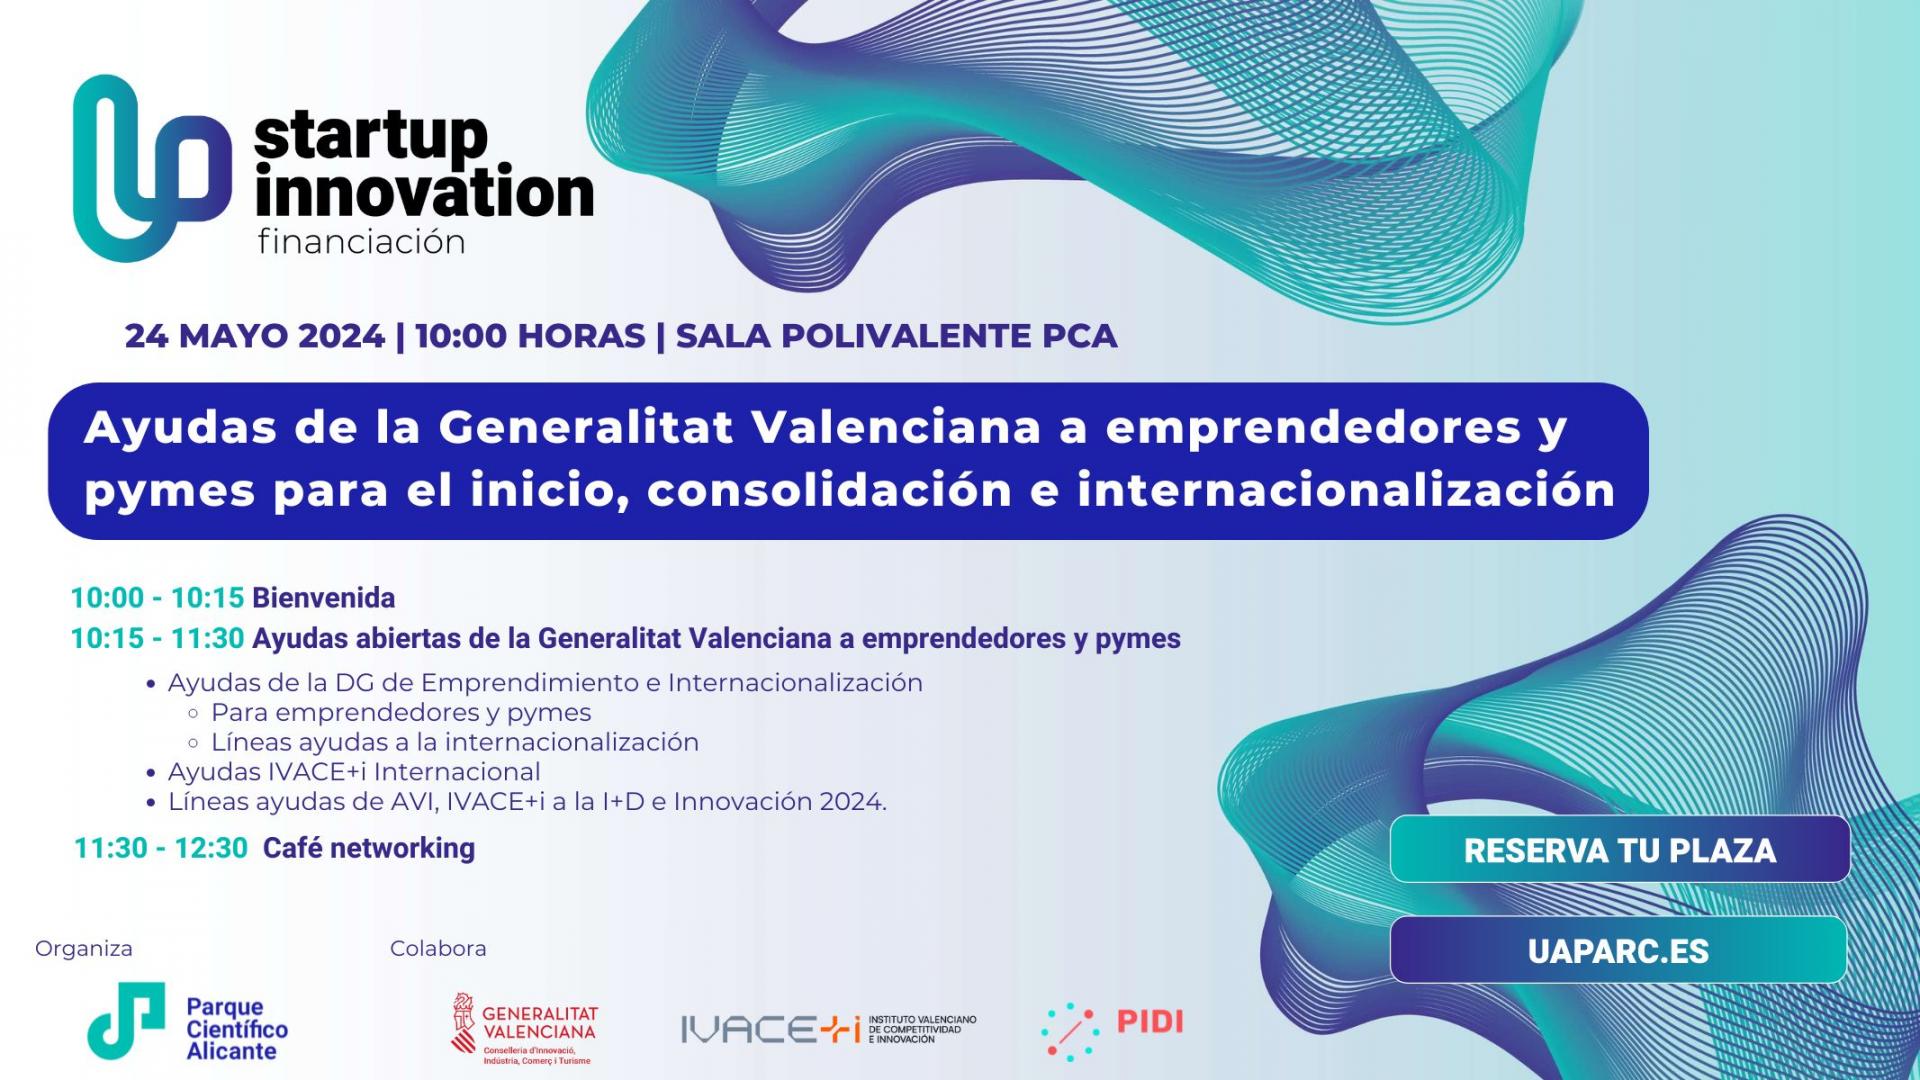 24 DE MAYO | Ayudas de la Generalitat Valenciana a emprendedores y pymes